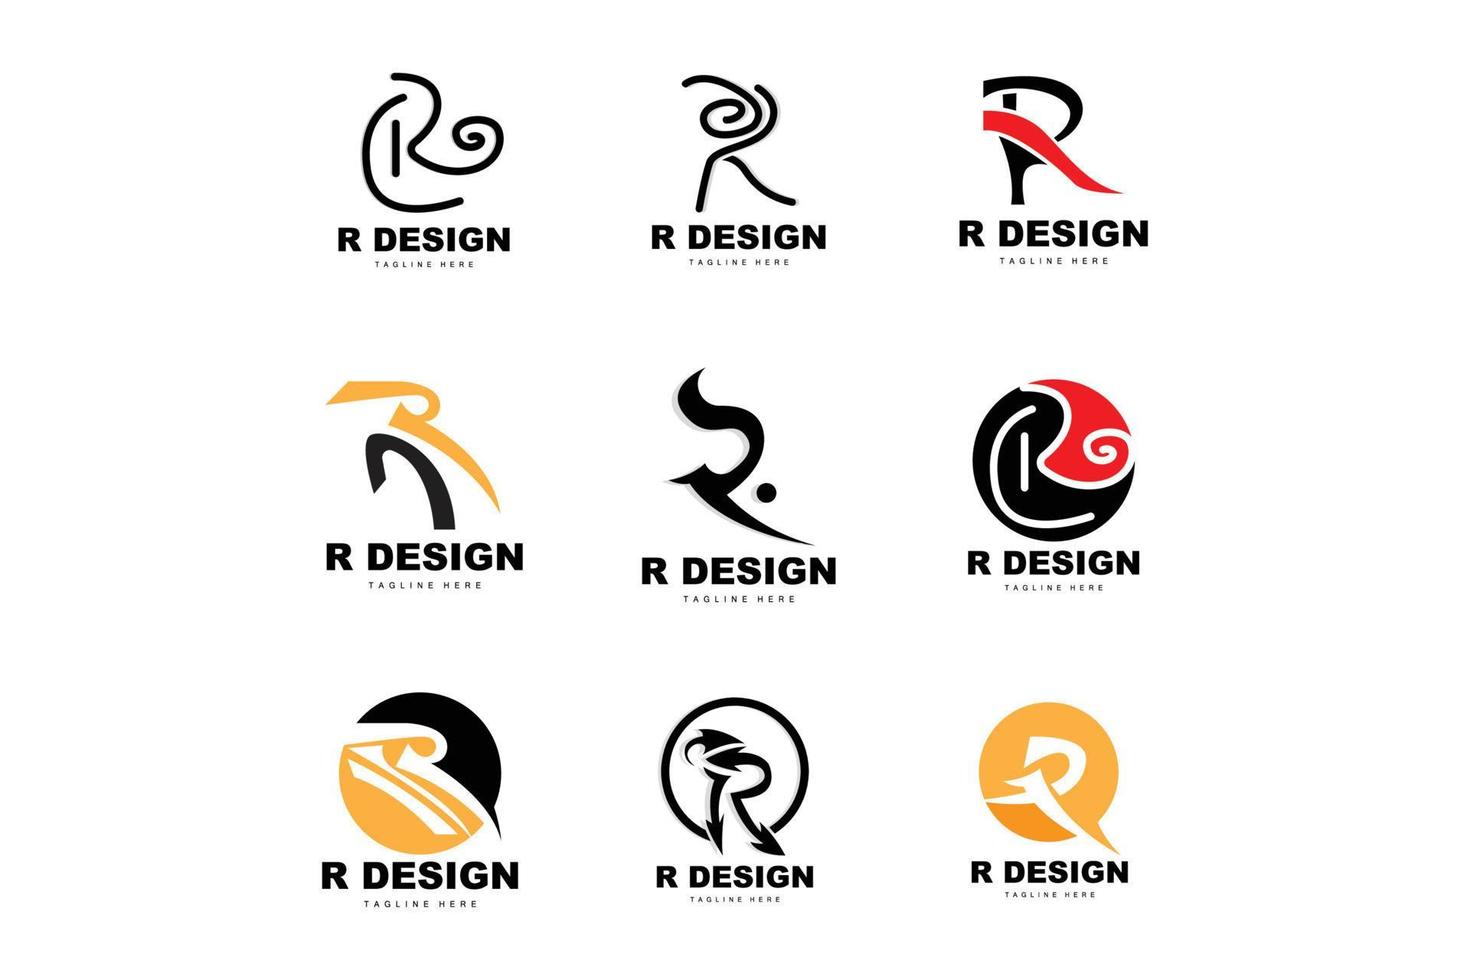 Doorweekt Bezwaar dorst r brief logo, alfabet vector, eerste r Product merk logotype ontwerp  21474166 Vectorkunst bij Vecteezy